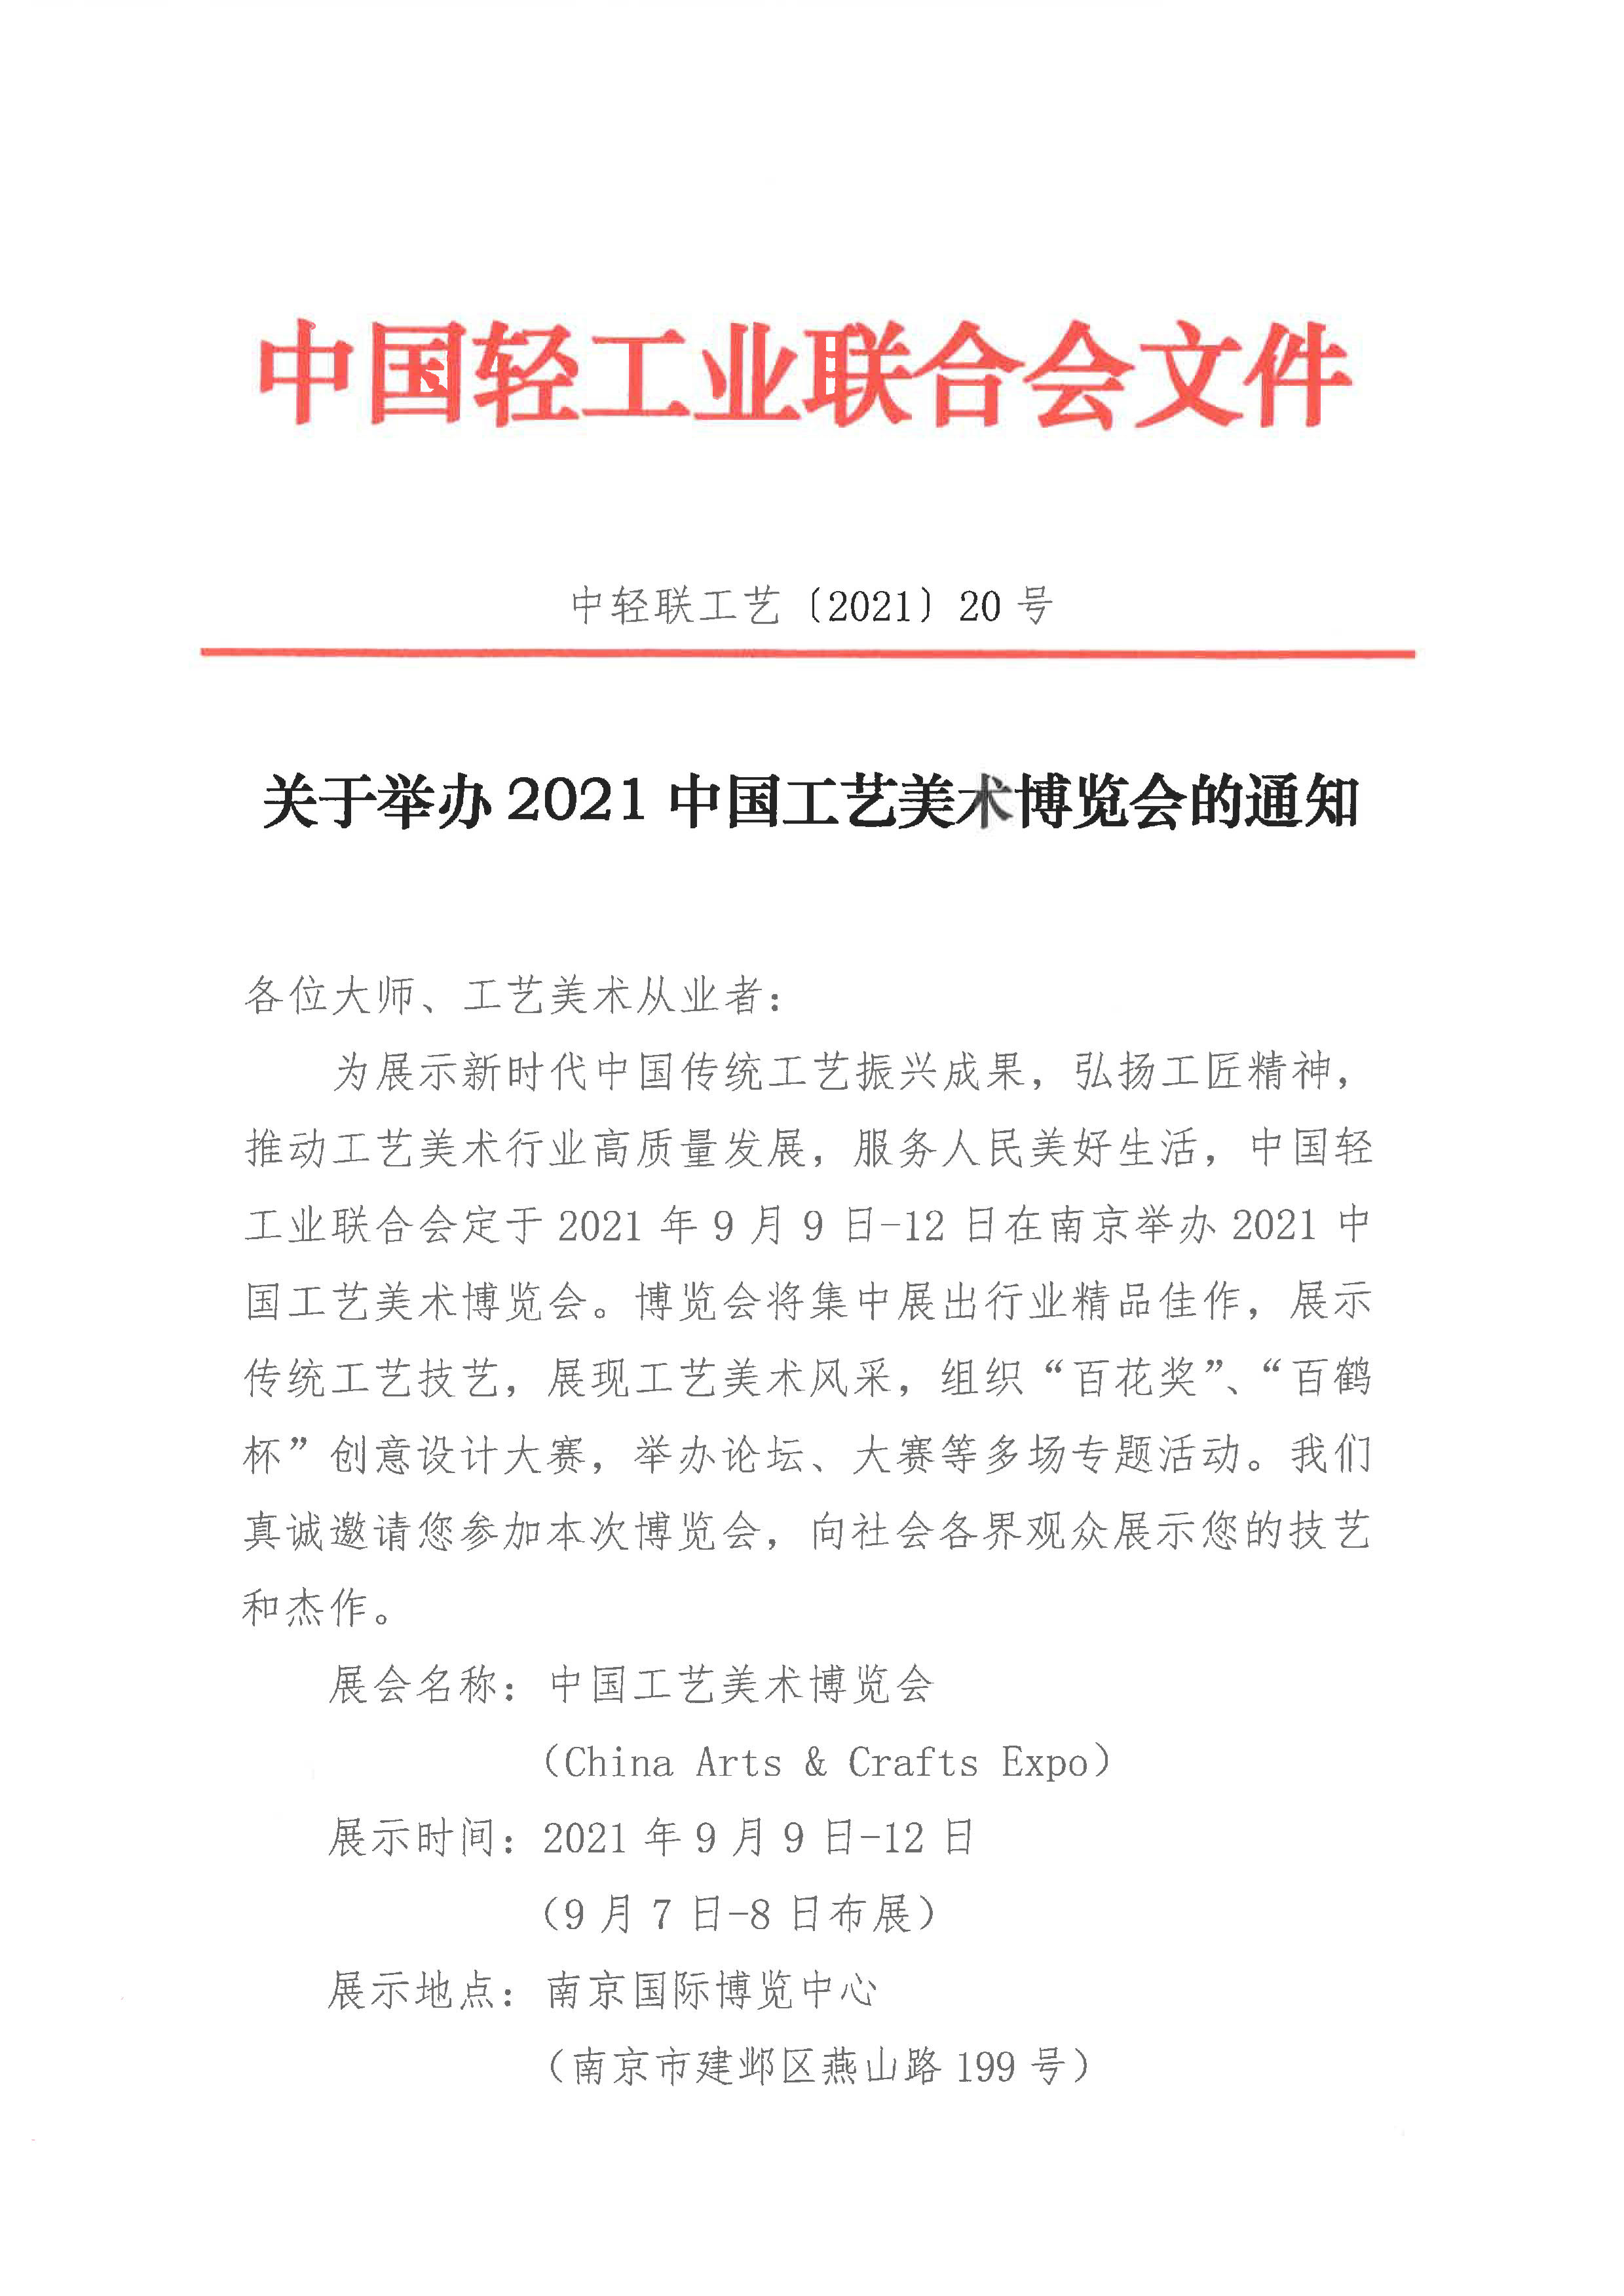 关于举办2021中国工艺美术博览会的通知（从业者）_1.jpg